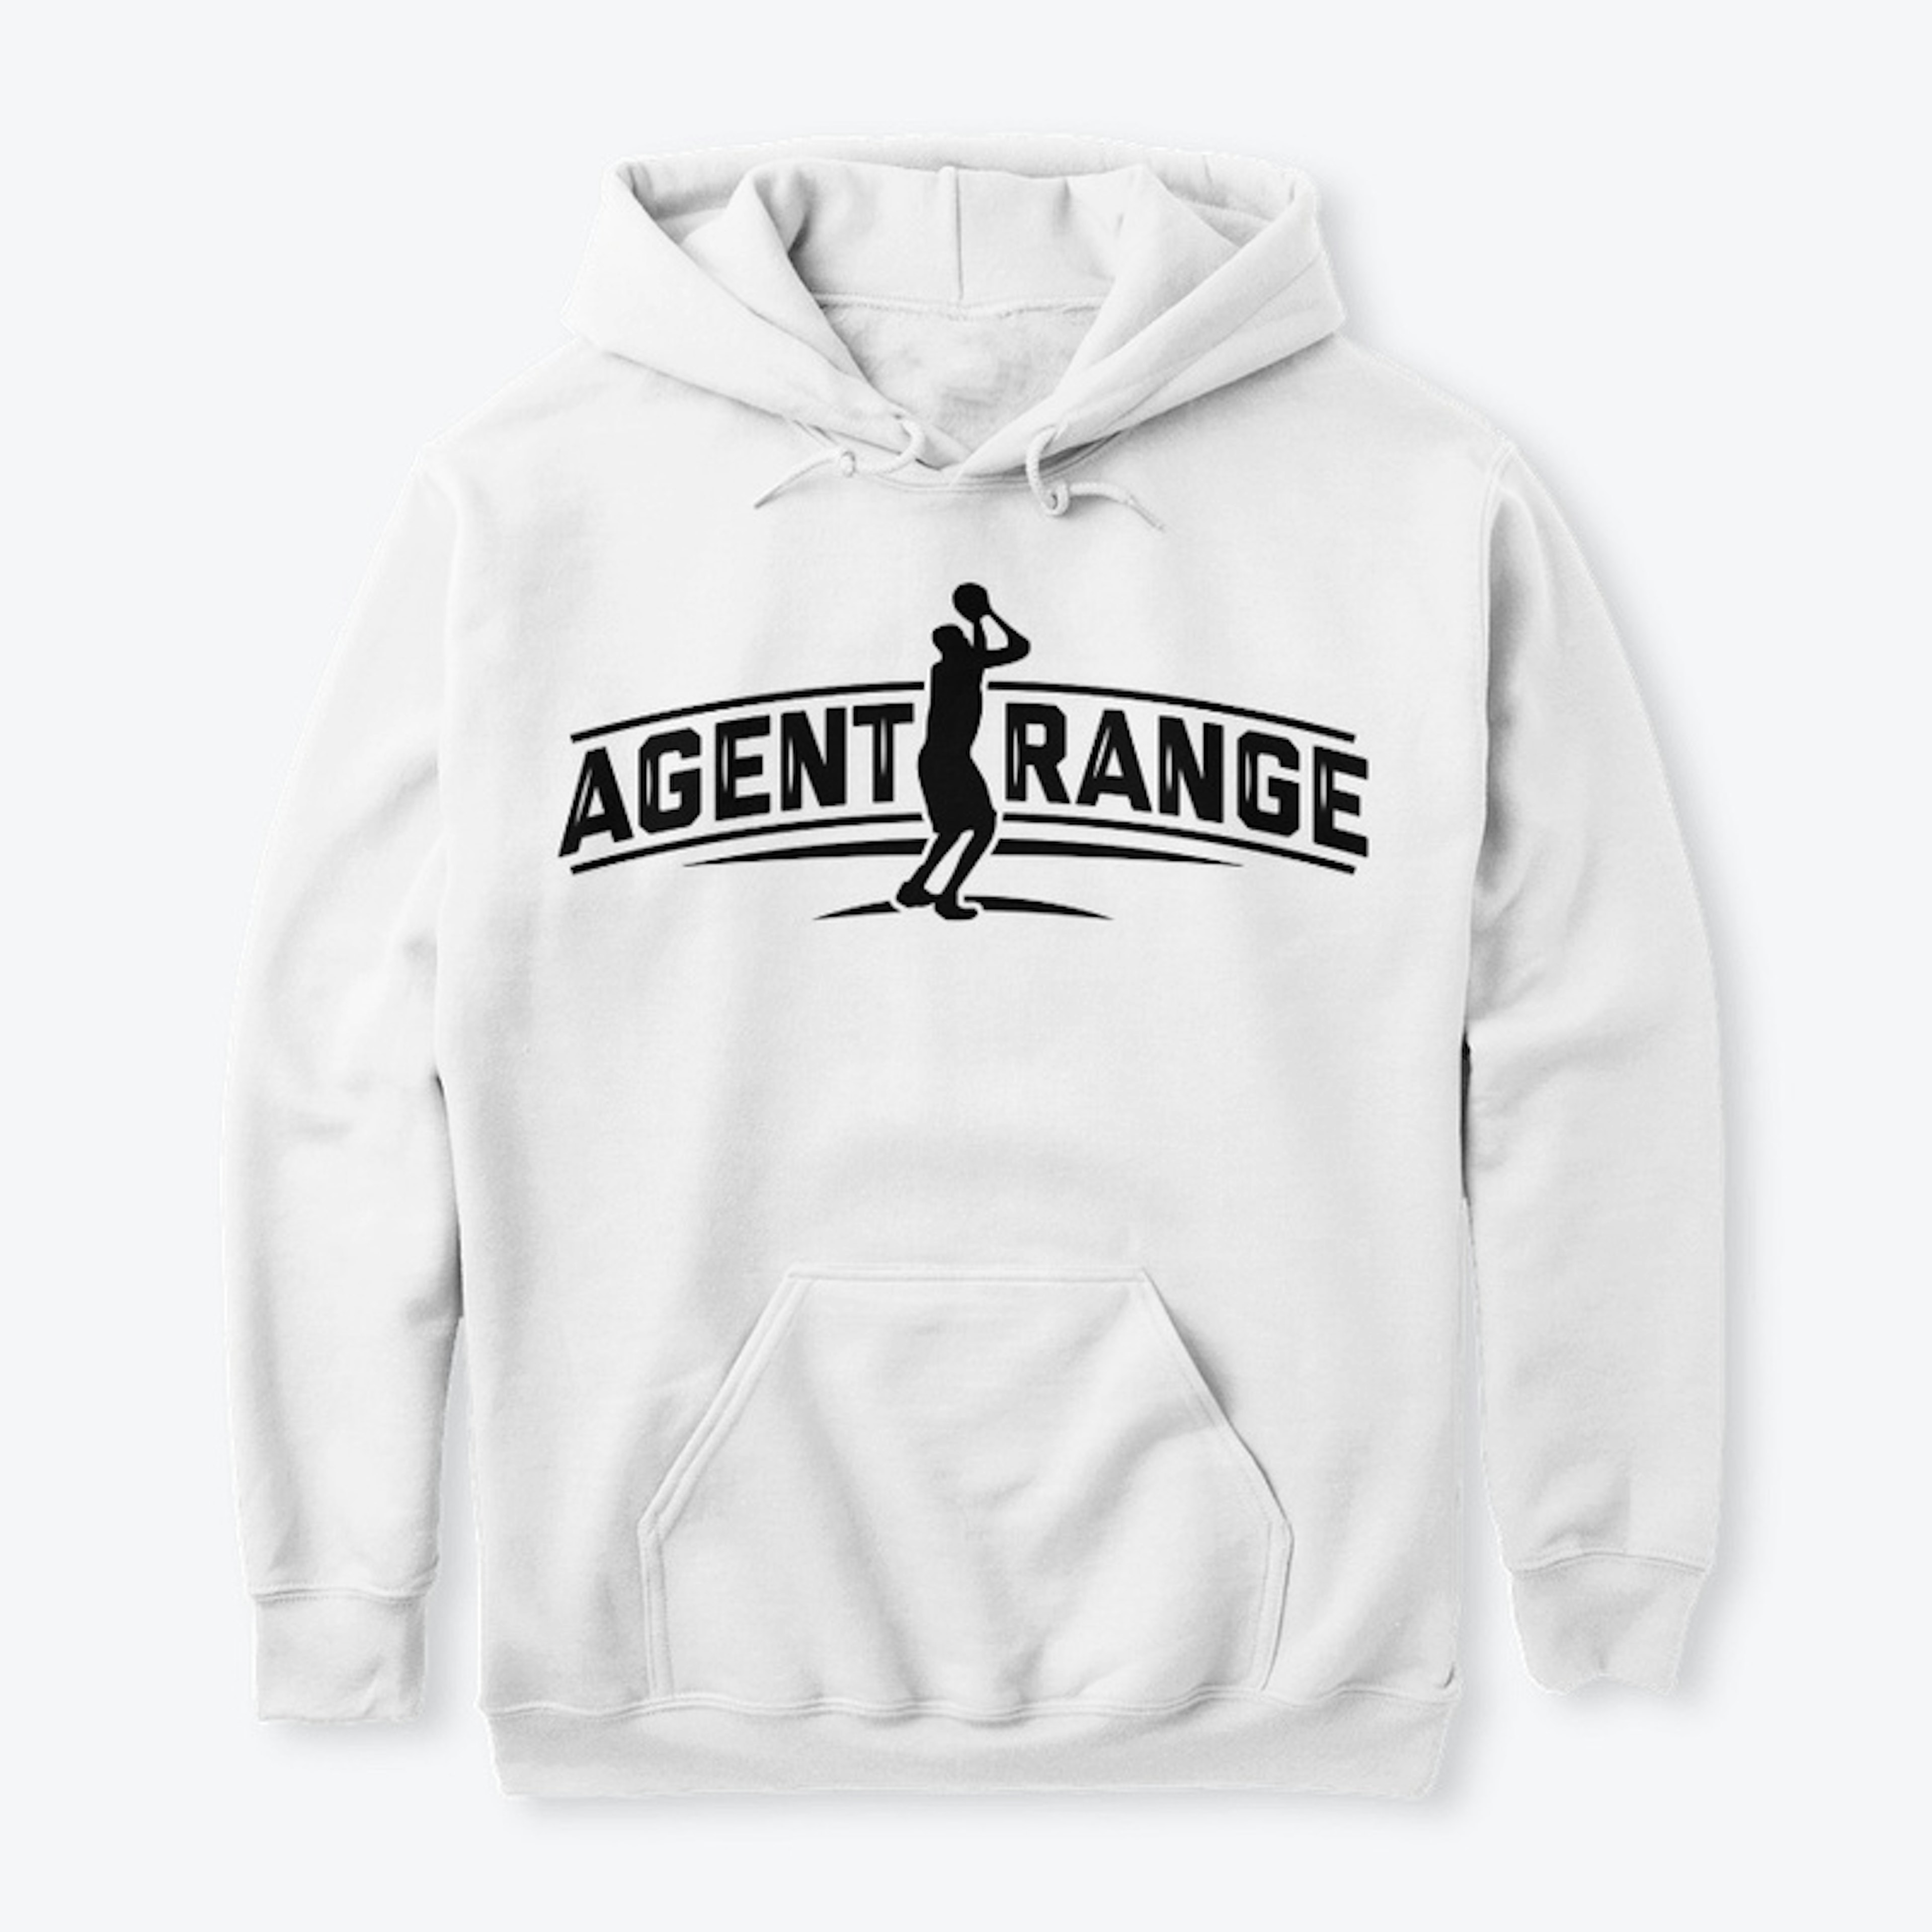 Agent Range Sweatshirt (White)